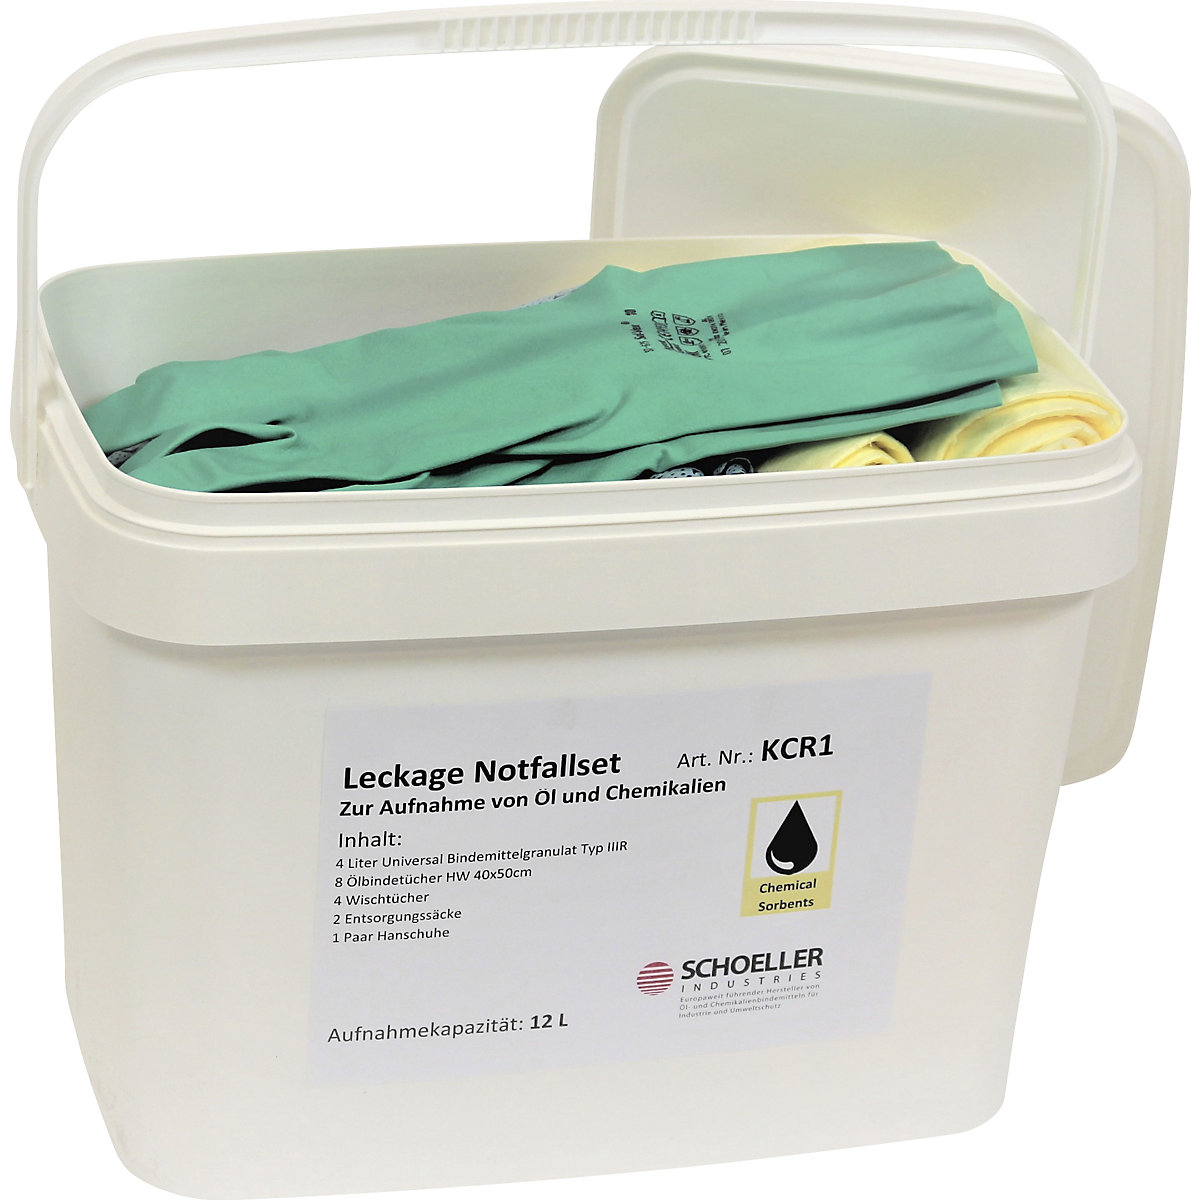 Leckage-Notfallbox: mit Vliesen und Granulat